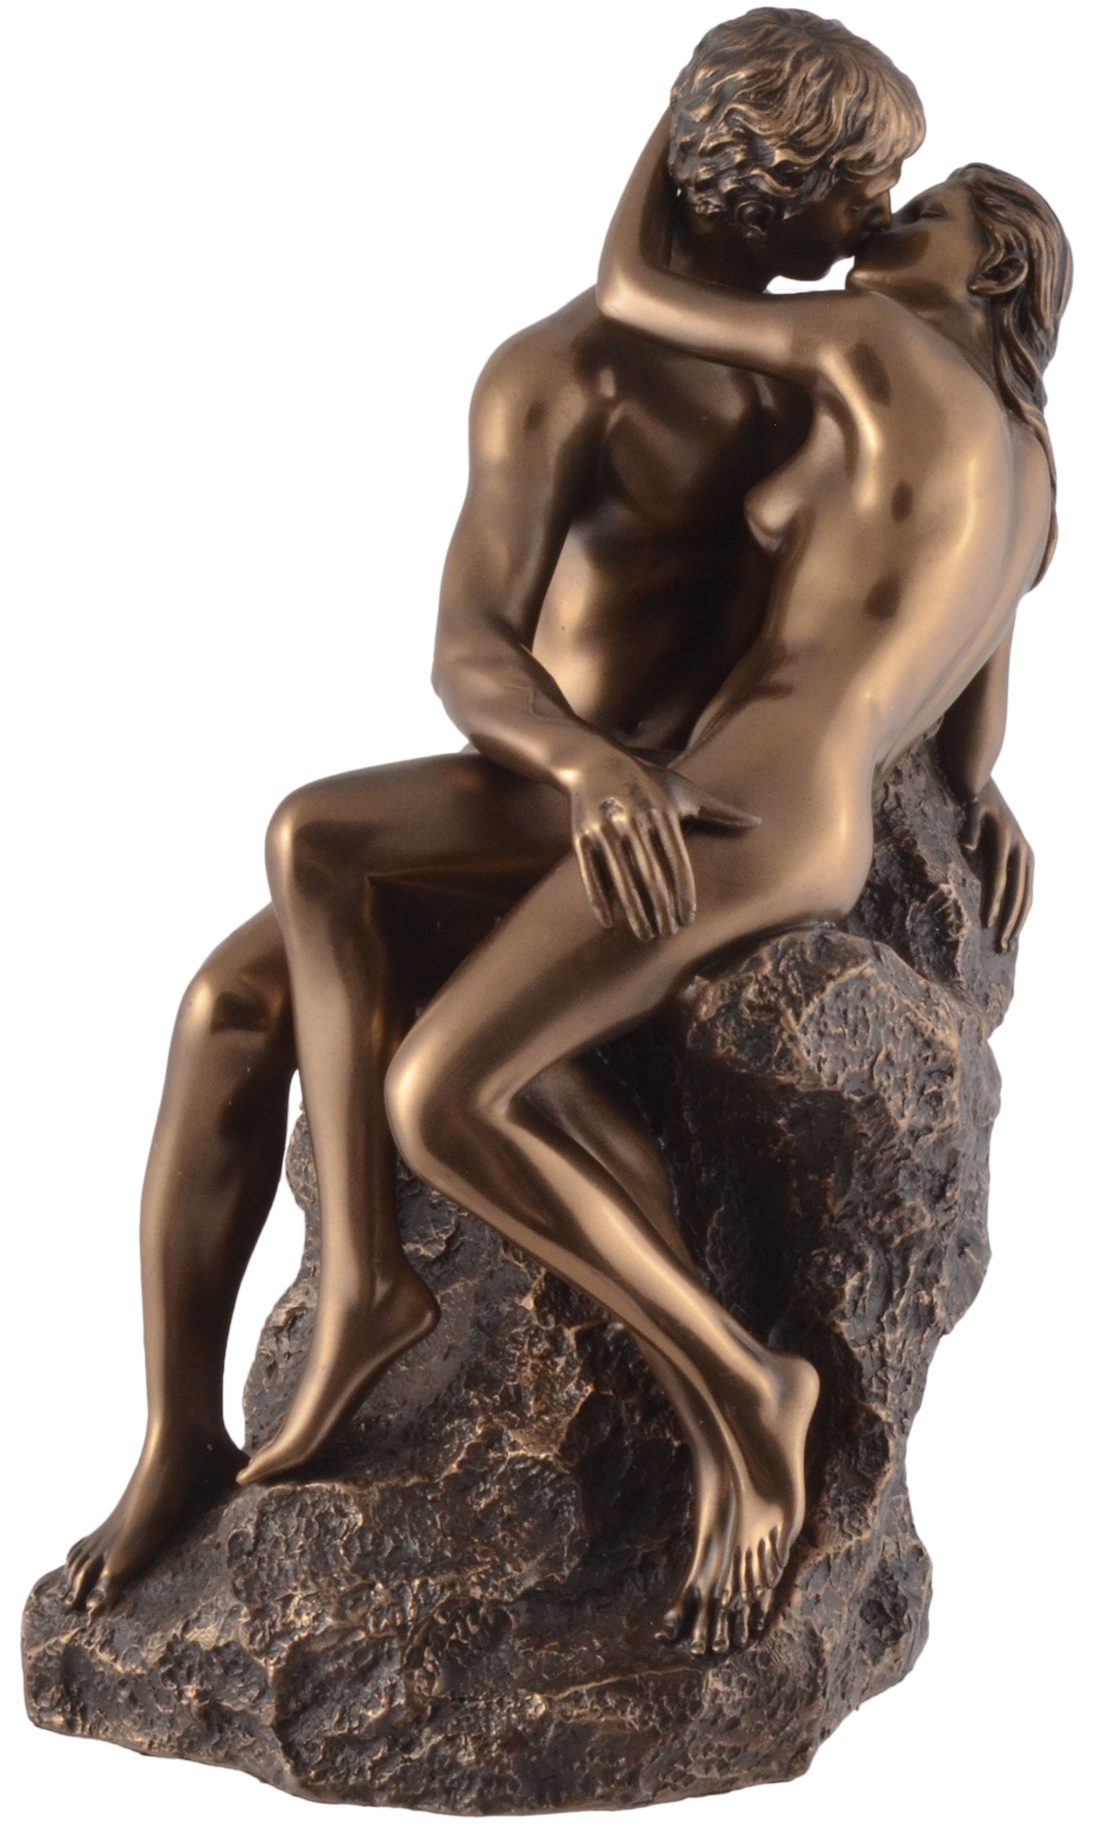 Vogler direct Gmbh Dekofigur Die Liebenden "Der Kuss" nach Rodin - bronziert by Veronese, von Hand bronziert, LxBxH ca. 16x12x24cm